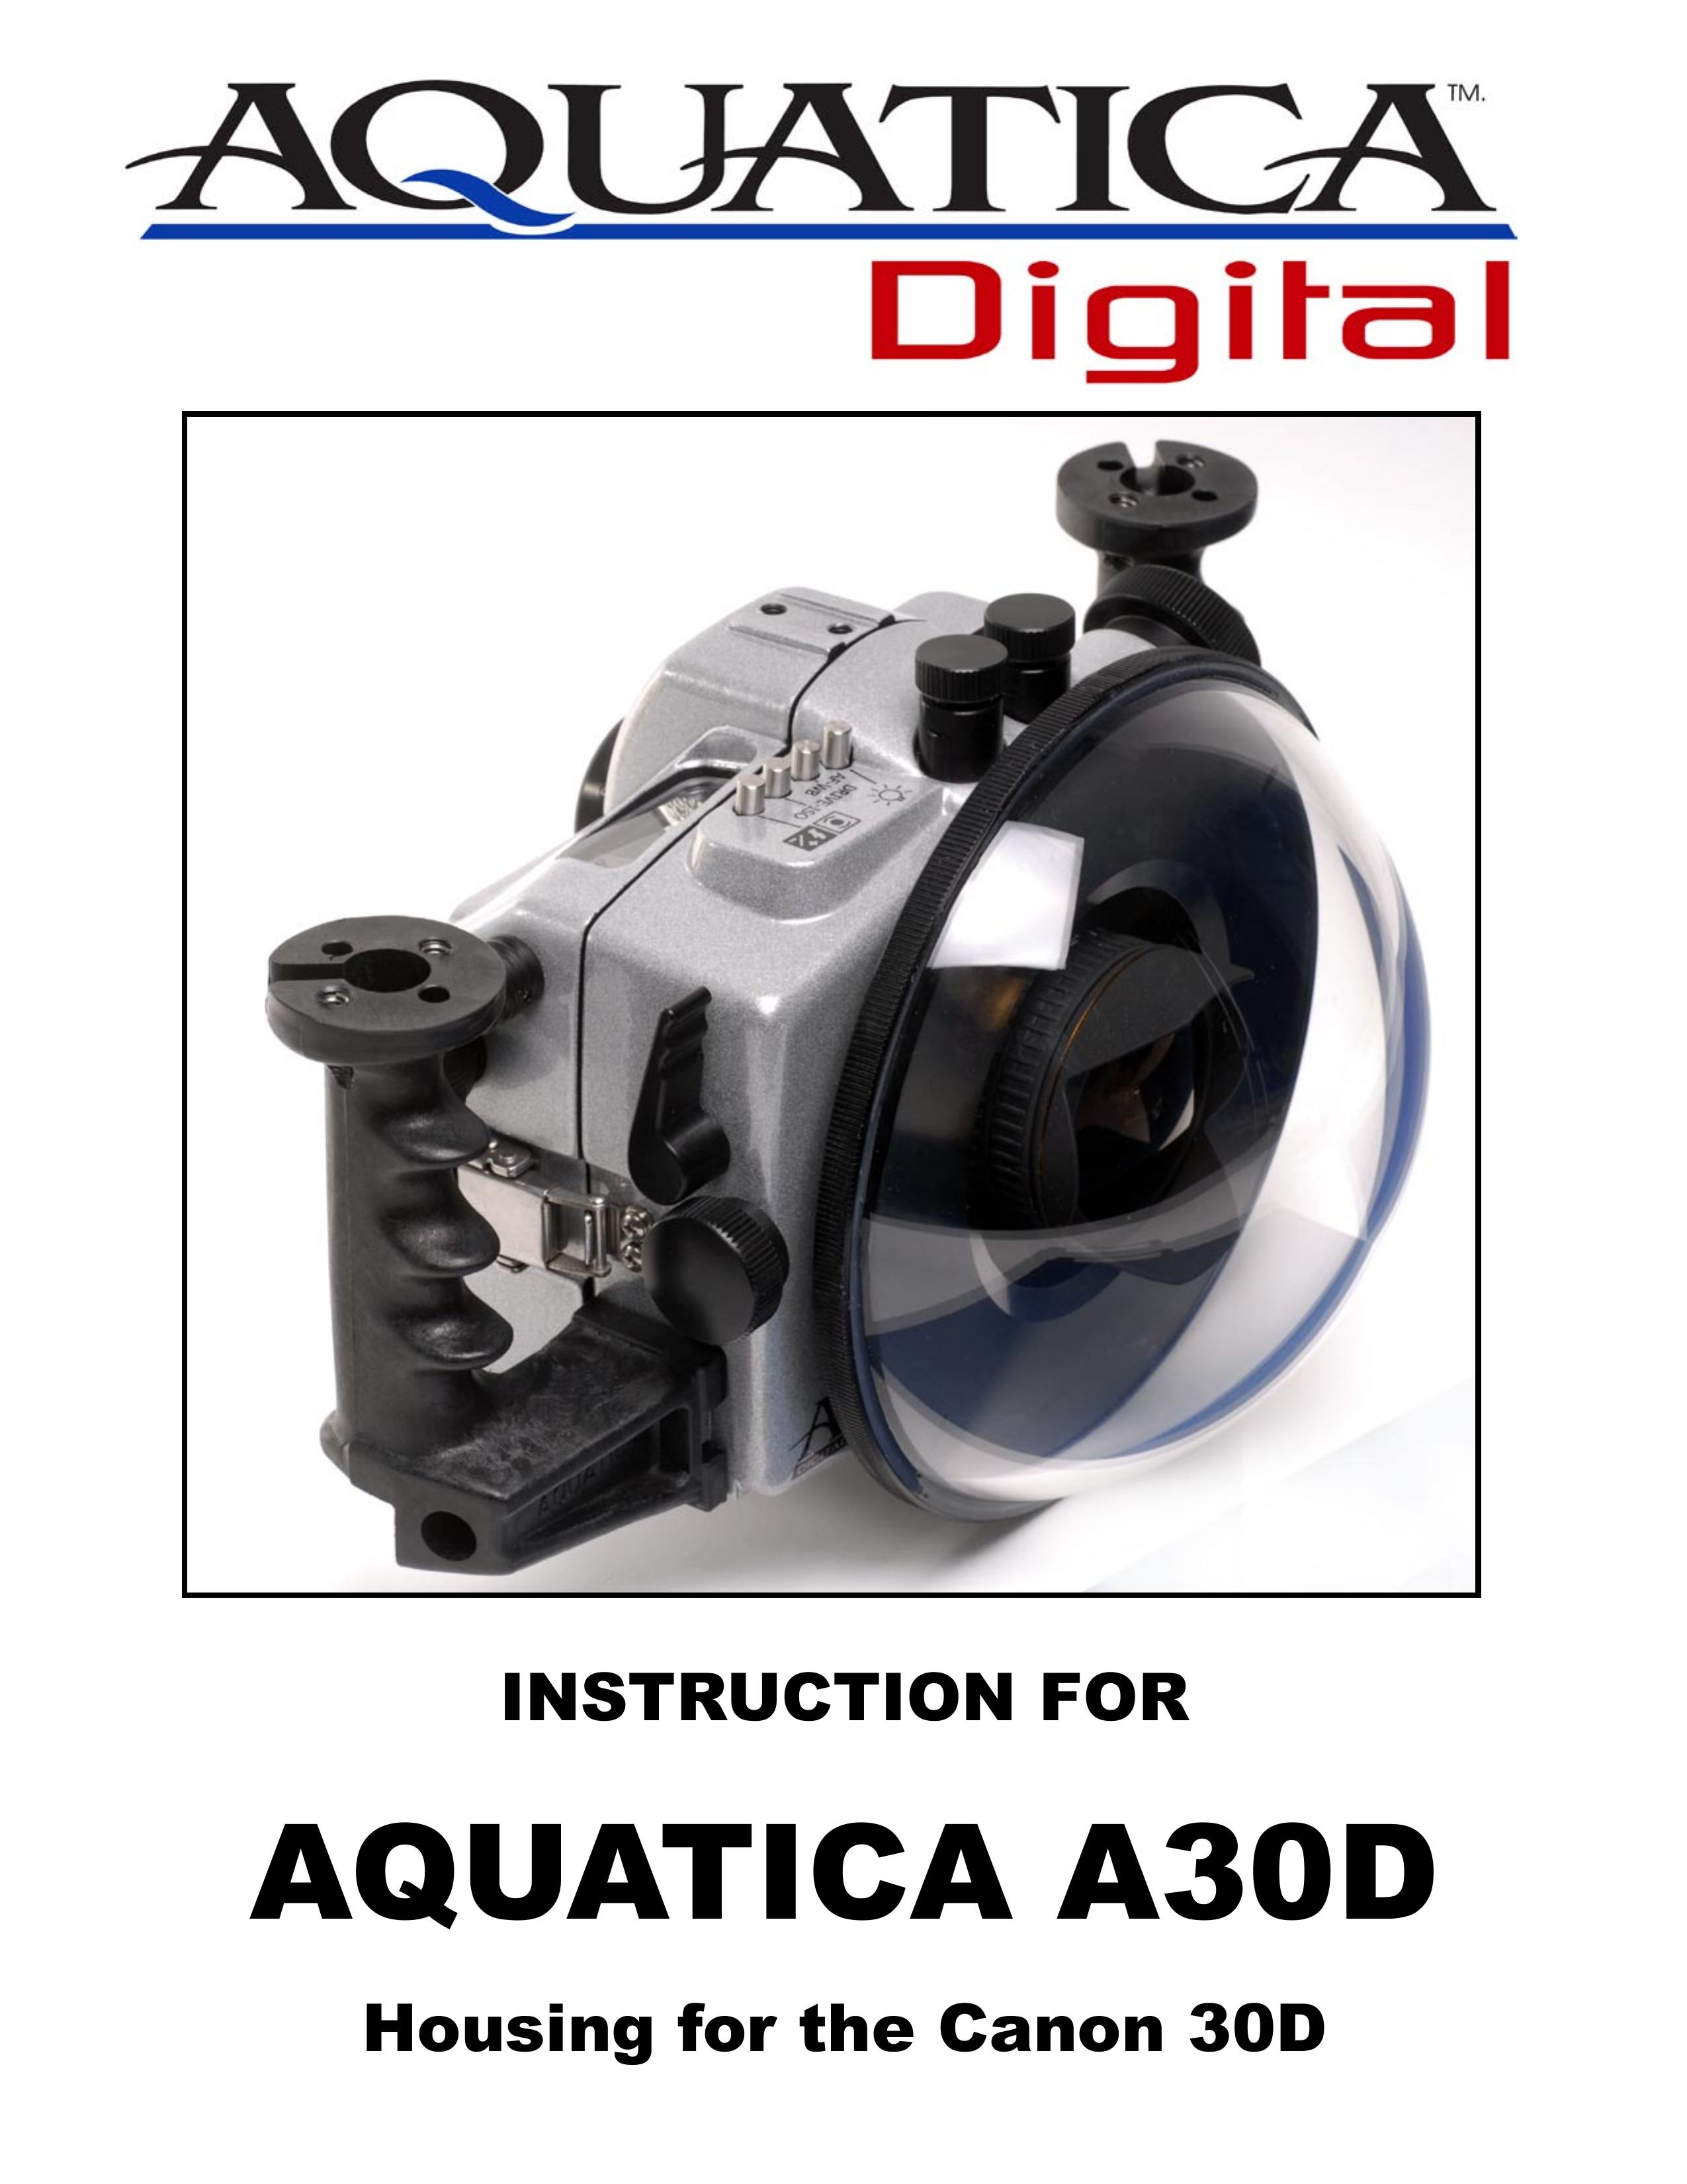 Aquatica A30D Camera Accessories User Manual